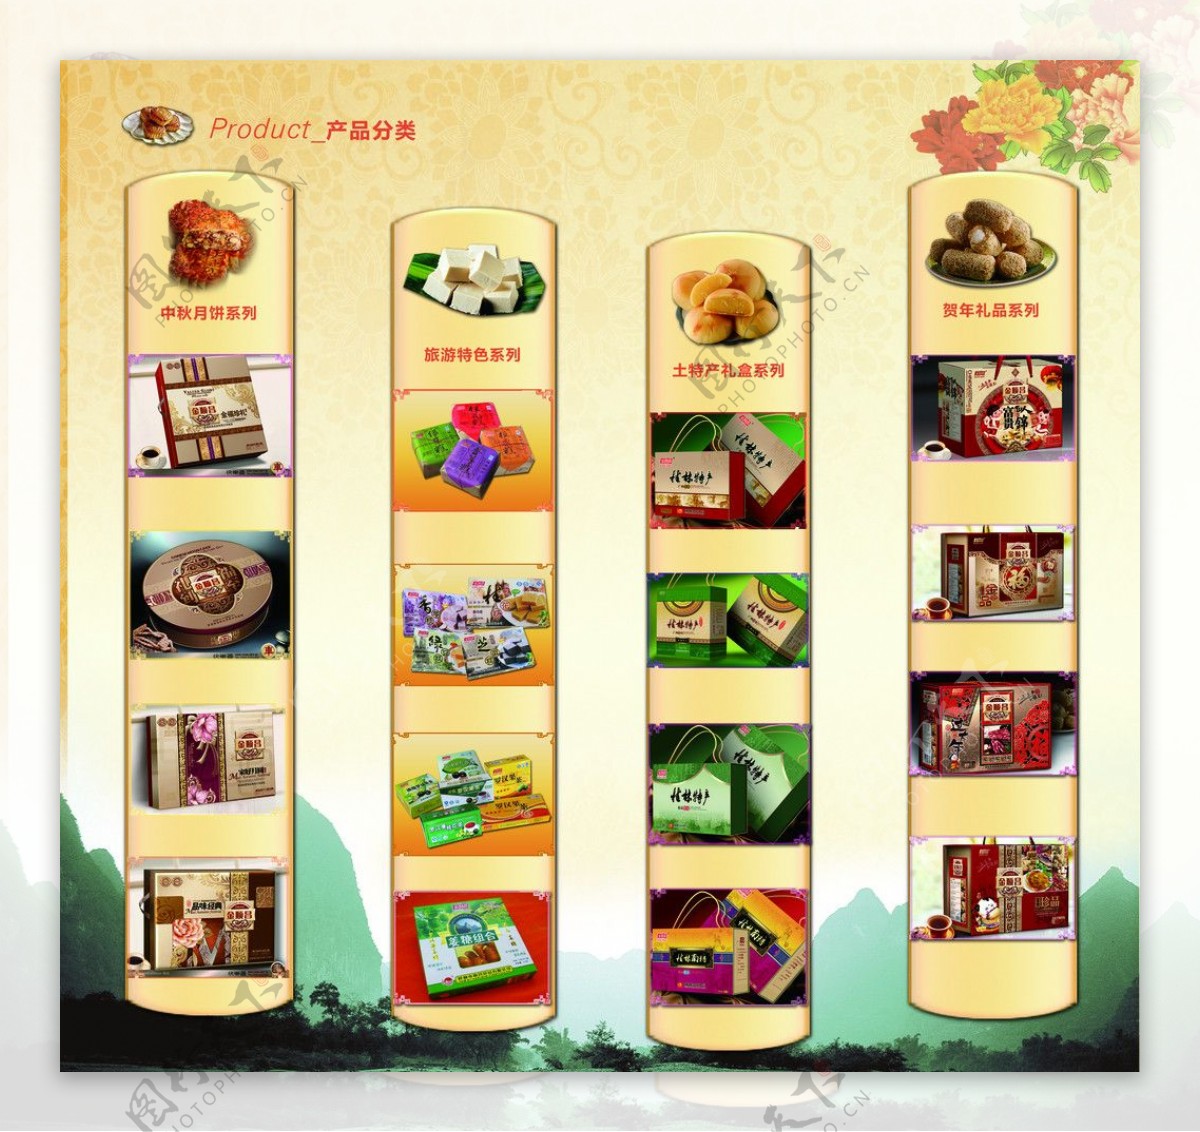 食品公司企业画册海报产品展示图片